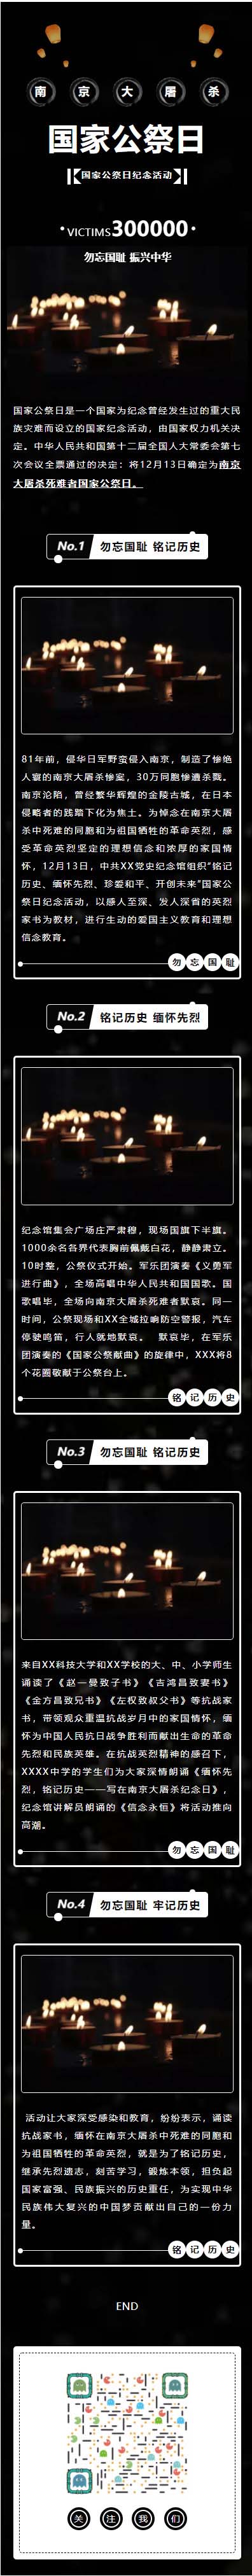 微信南京大屠杀国家公祭日纪念活动推文模板黑色风格推文素材